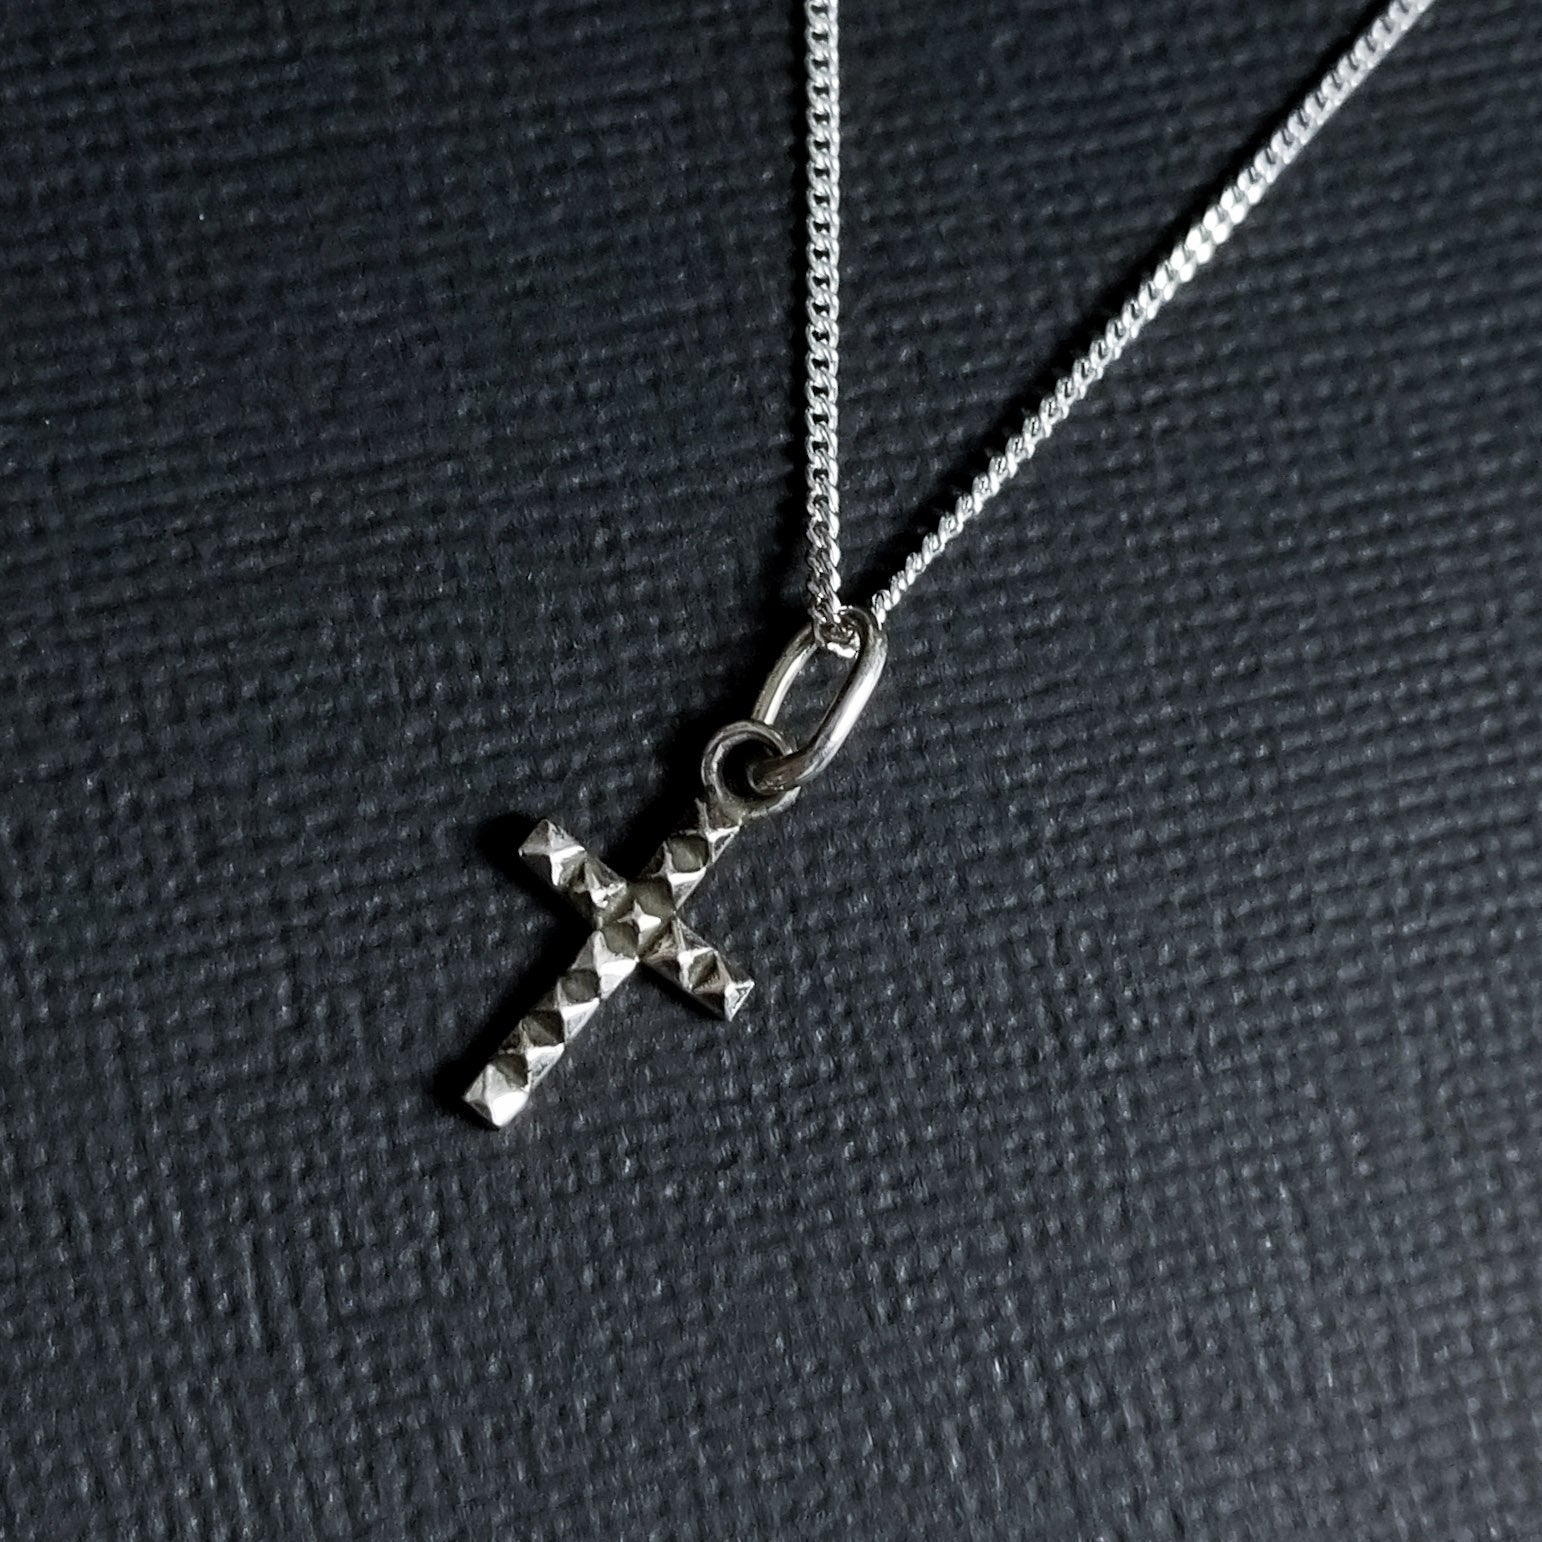 Tiny Studded Cross Pendant - Inchoo Bijoux